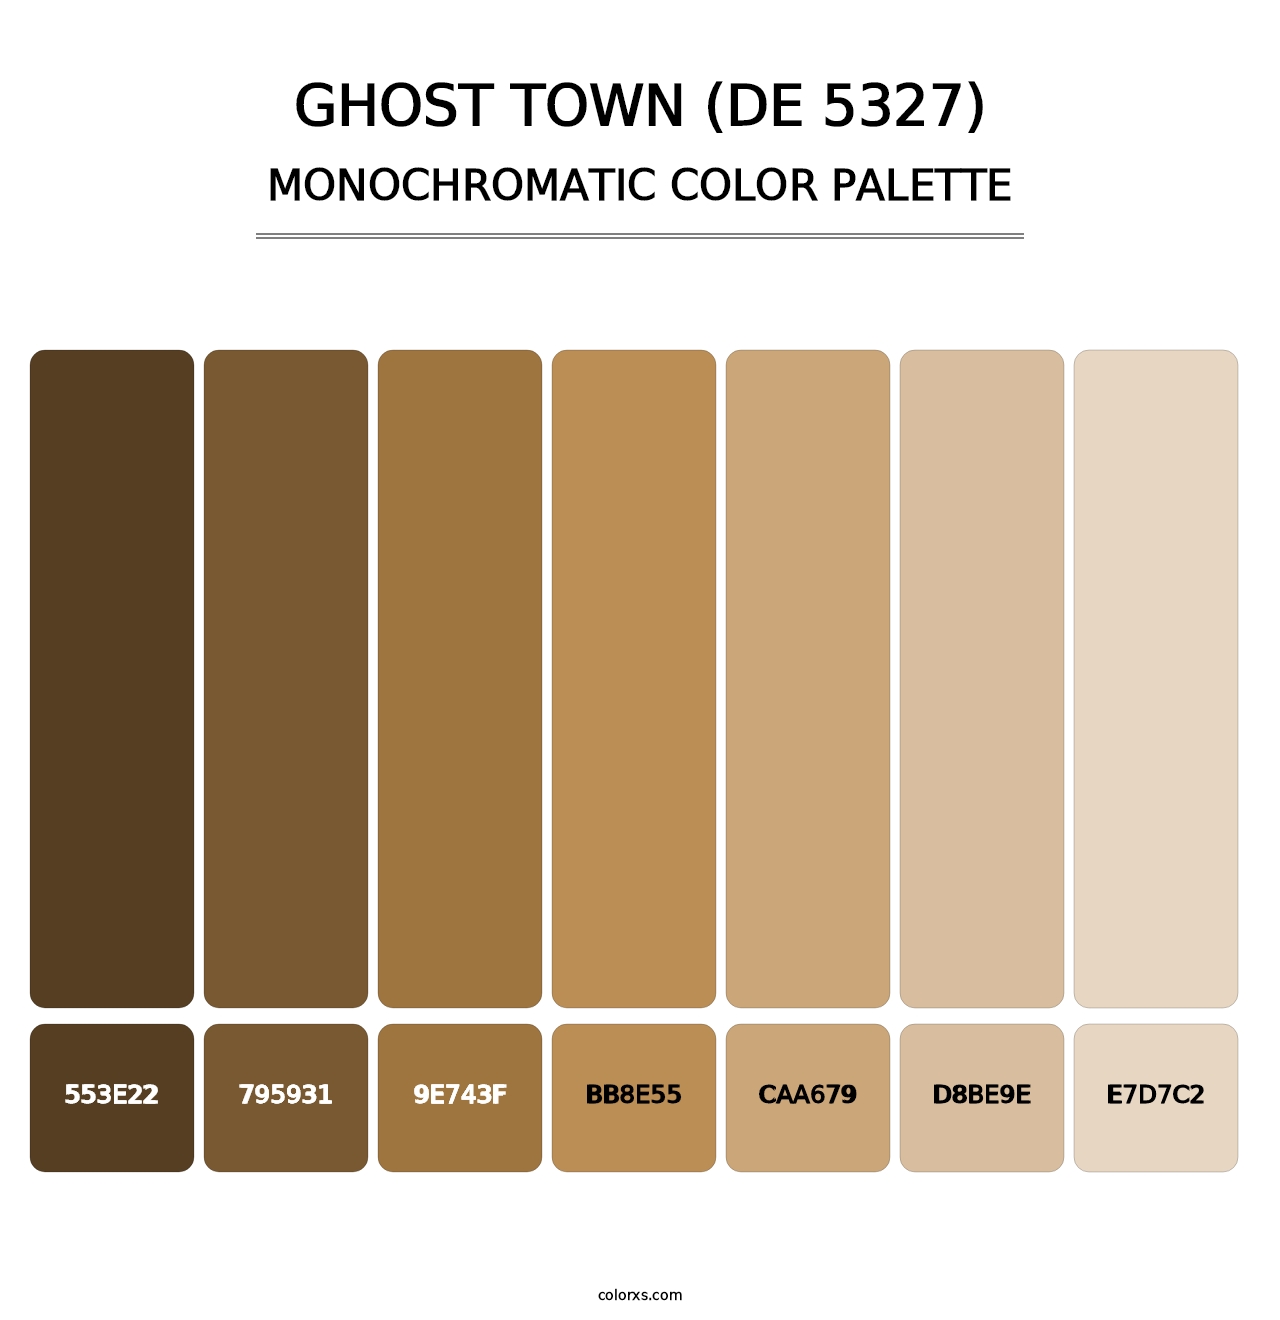 Ghost Town (DE 5327) - Monochromatic Color Palette